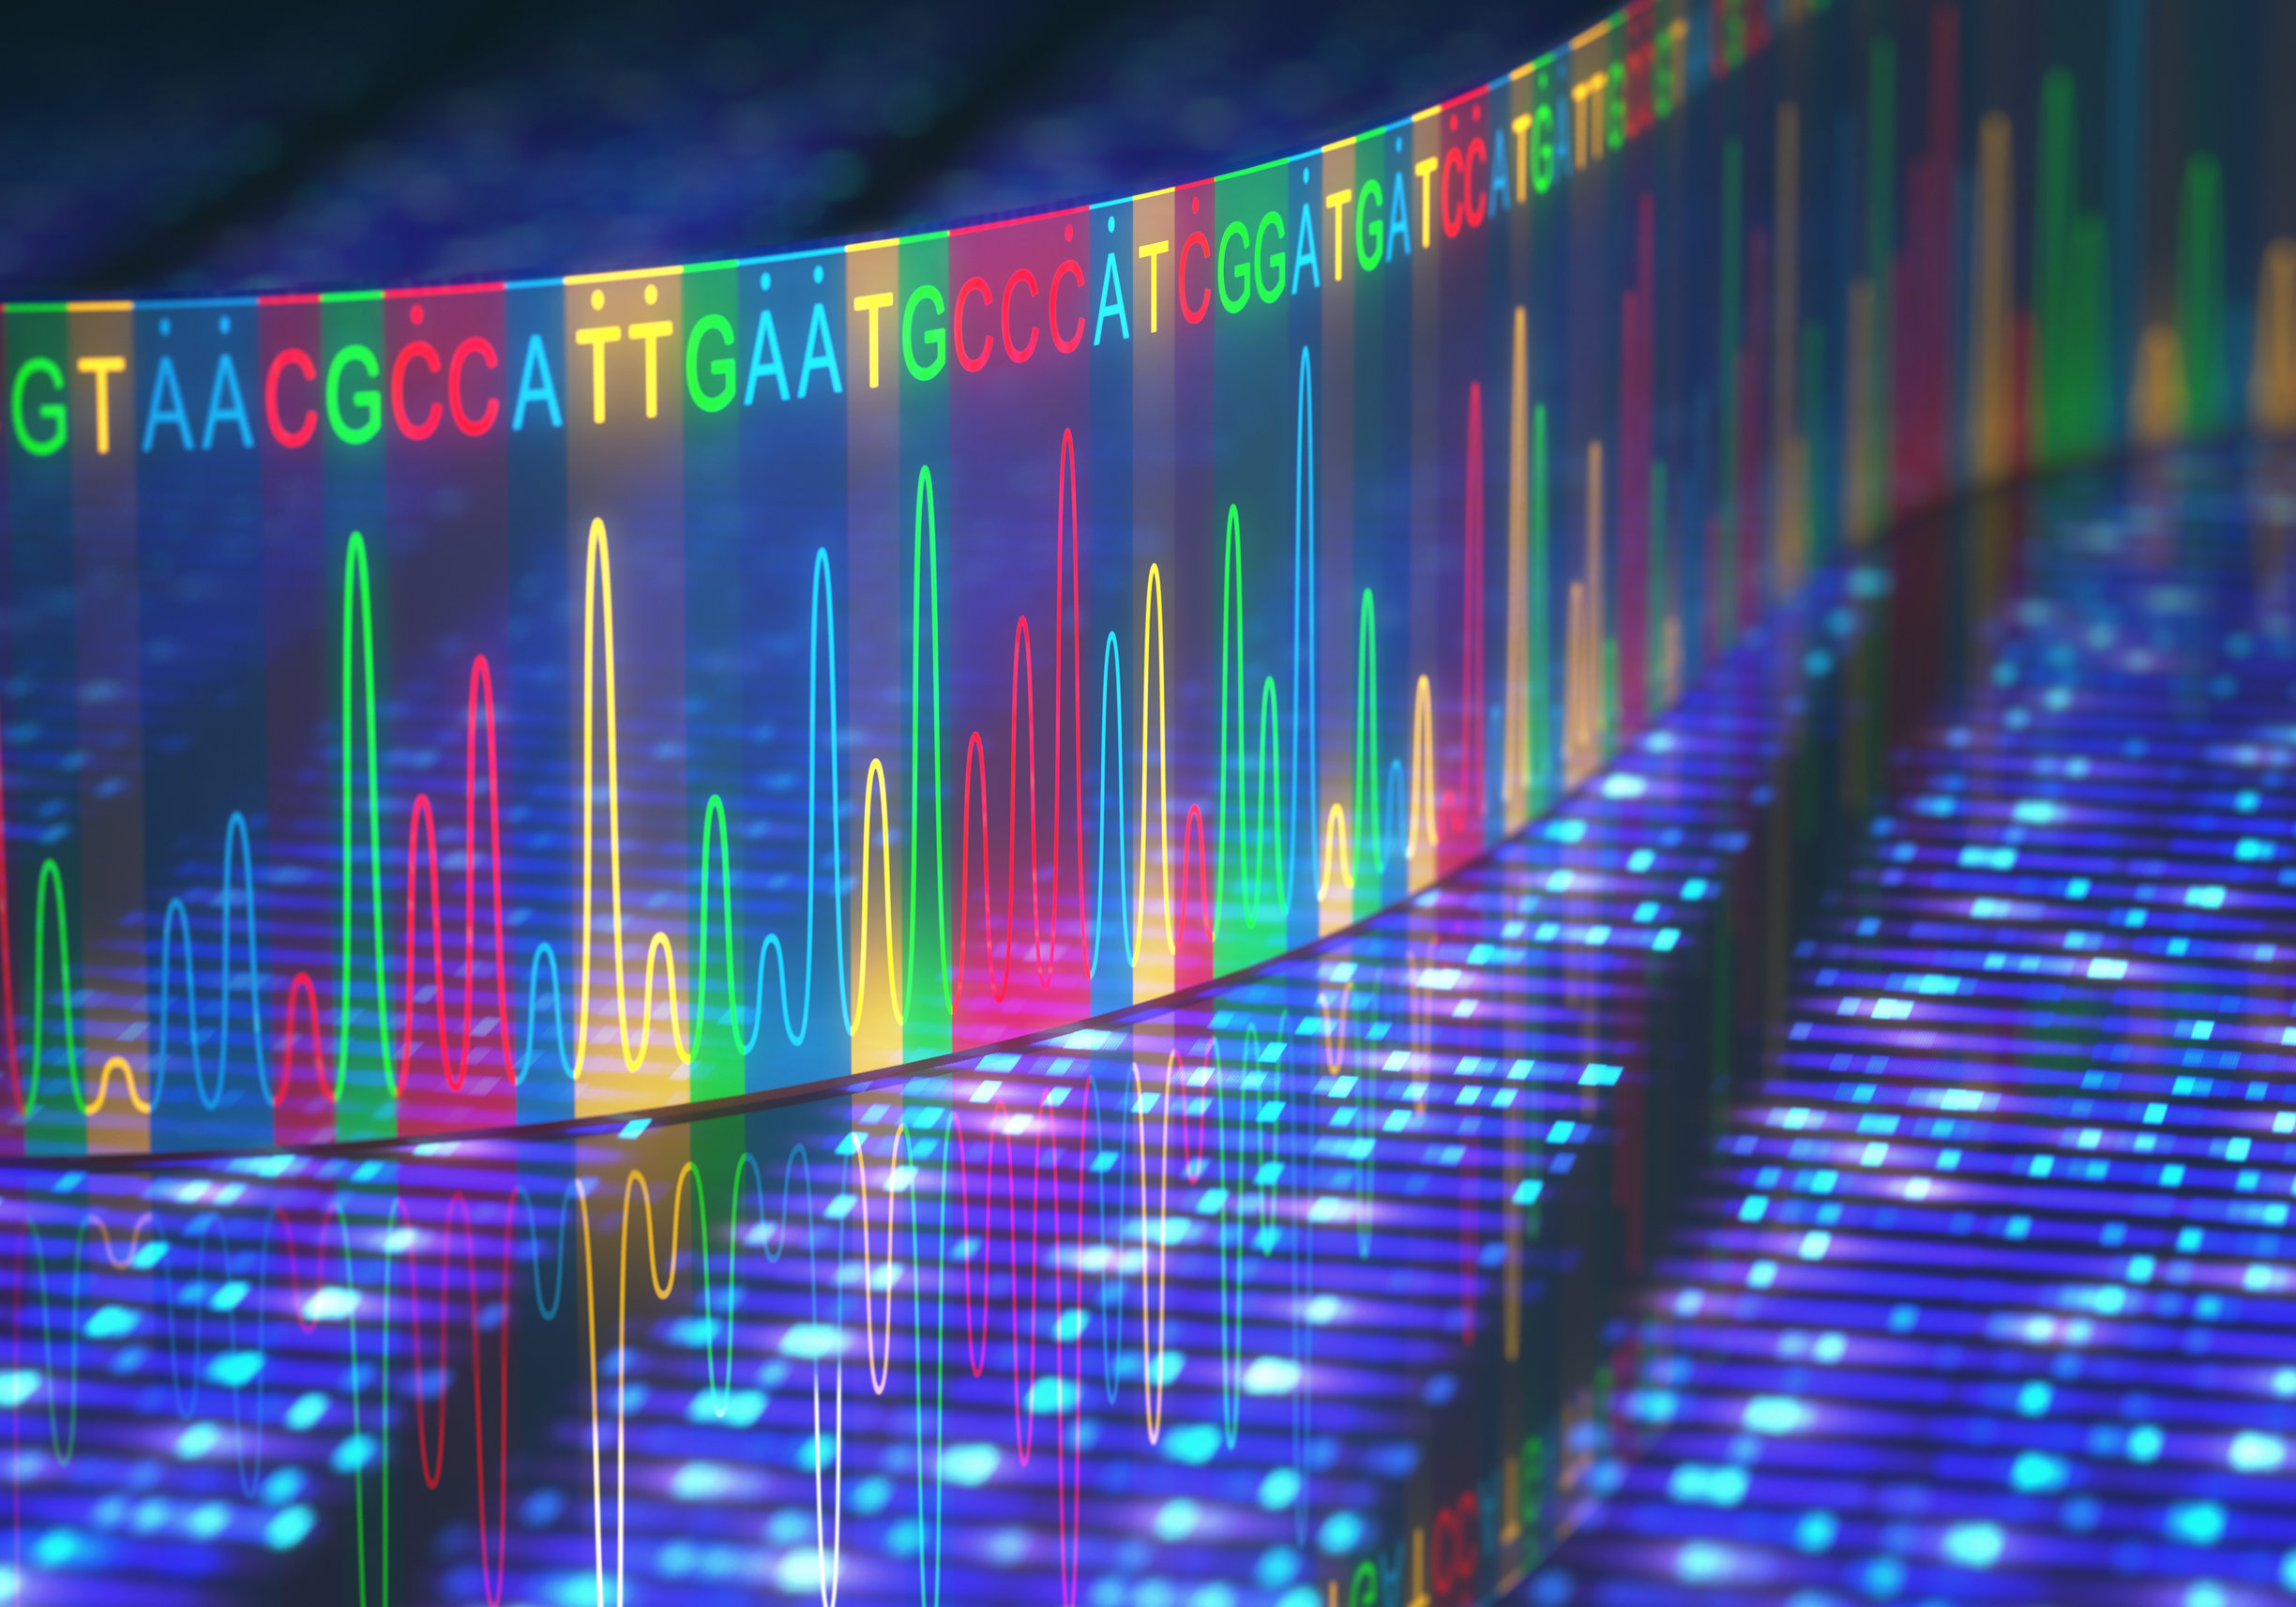 DNA jako nośnik danych? Jesteśmy coraz bliżej realizacji tego celu